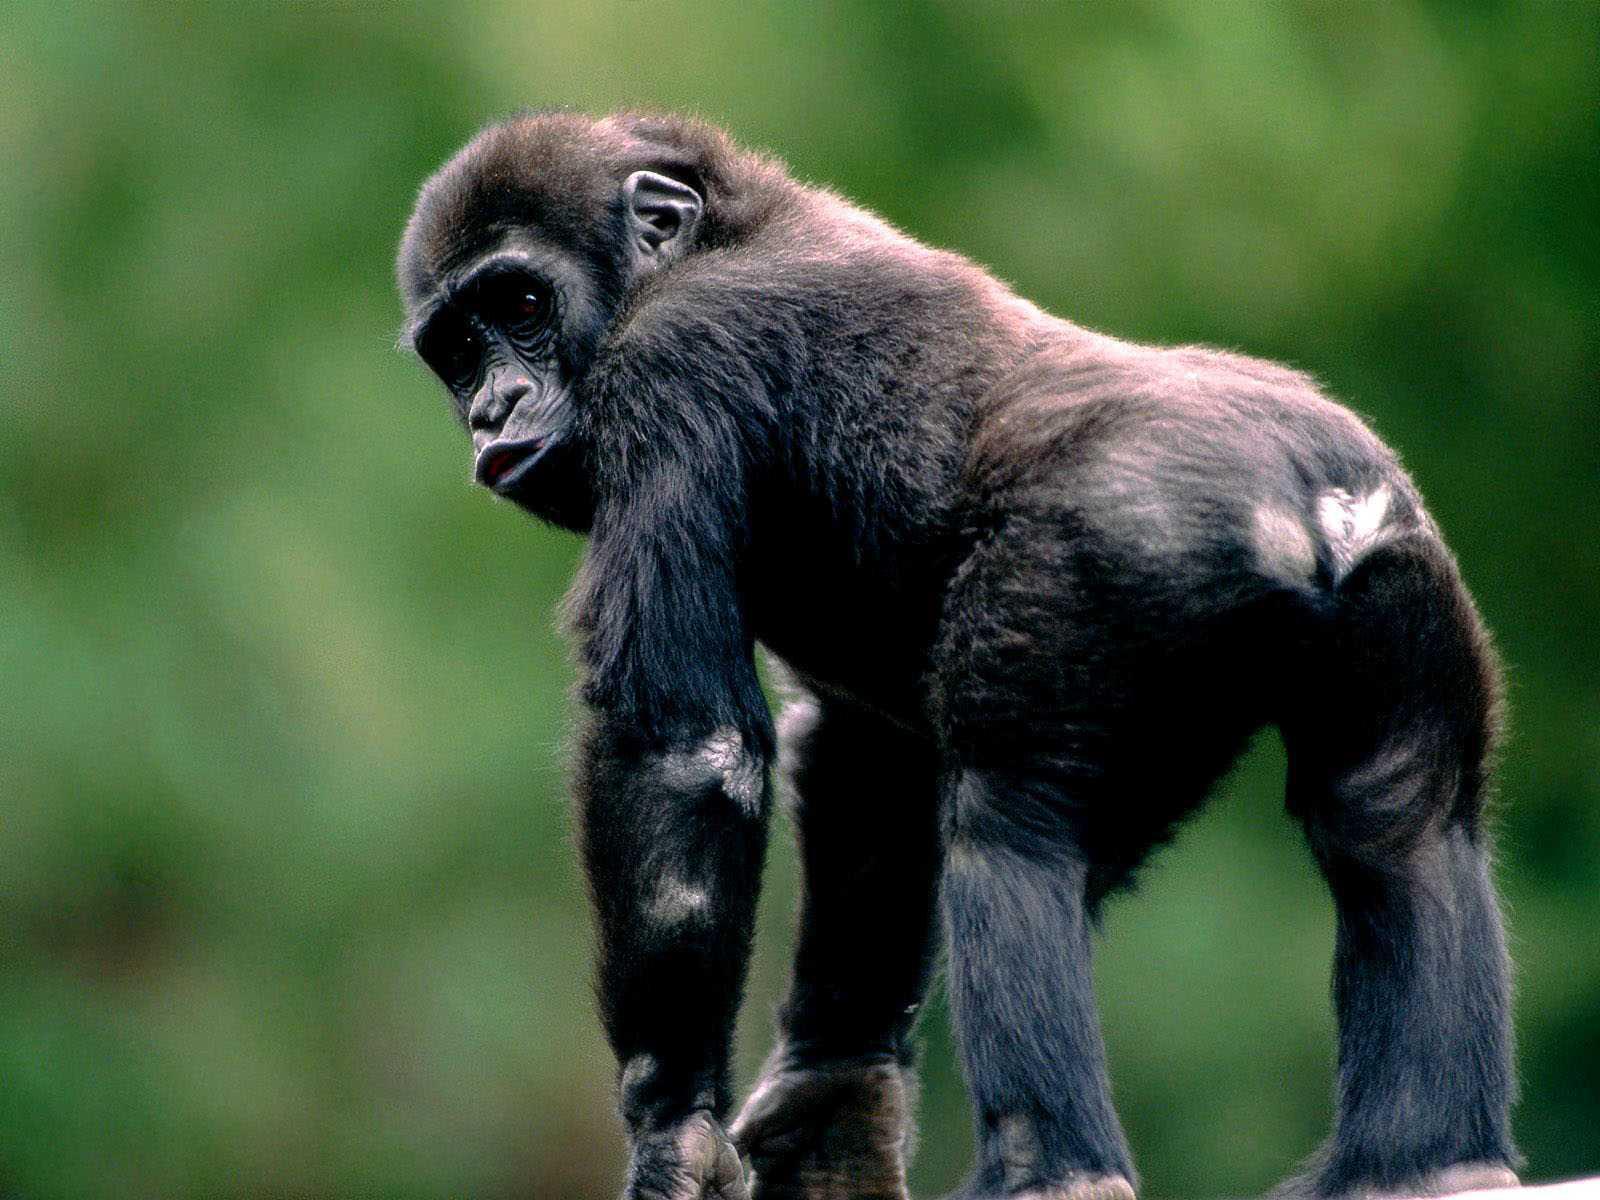 Chimpanzee Wallpaper Hd Download - Gorilla Monkey - HD Wallpaper 